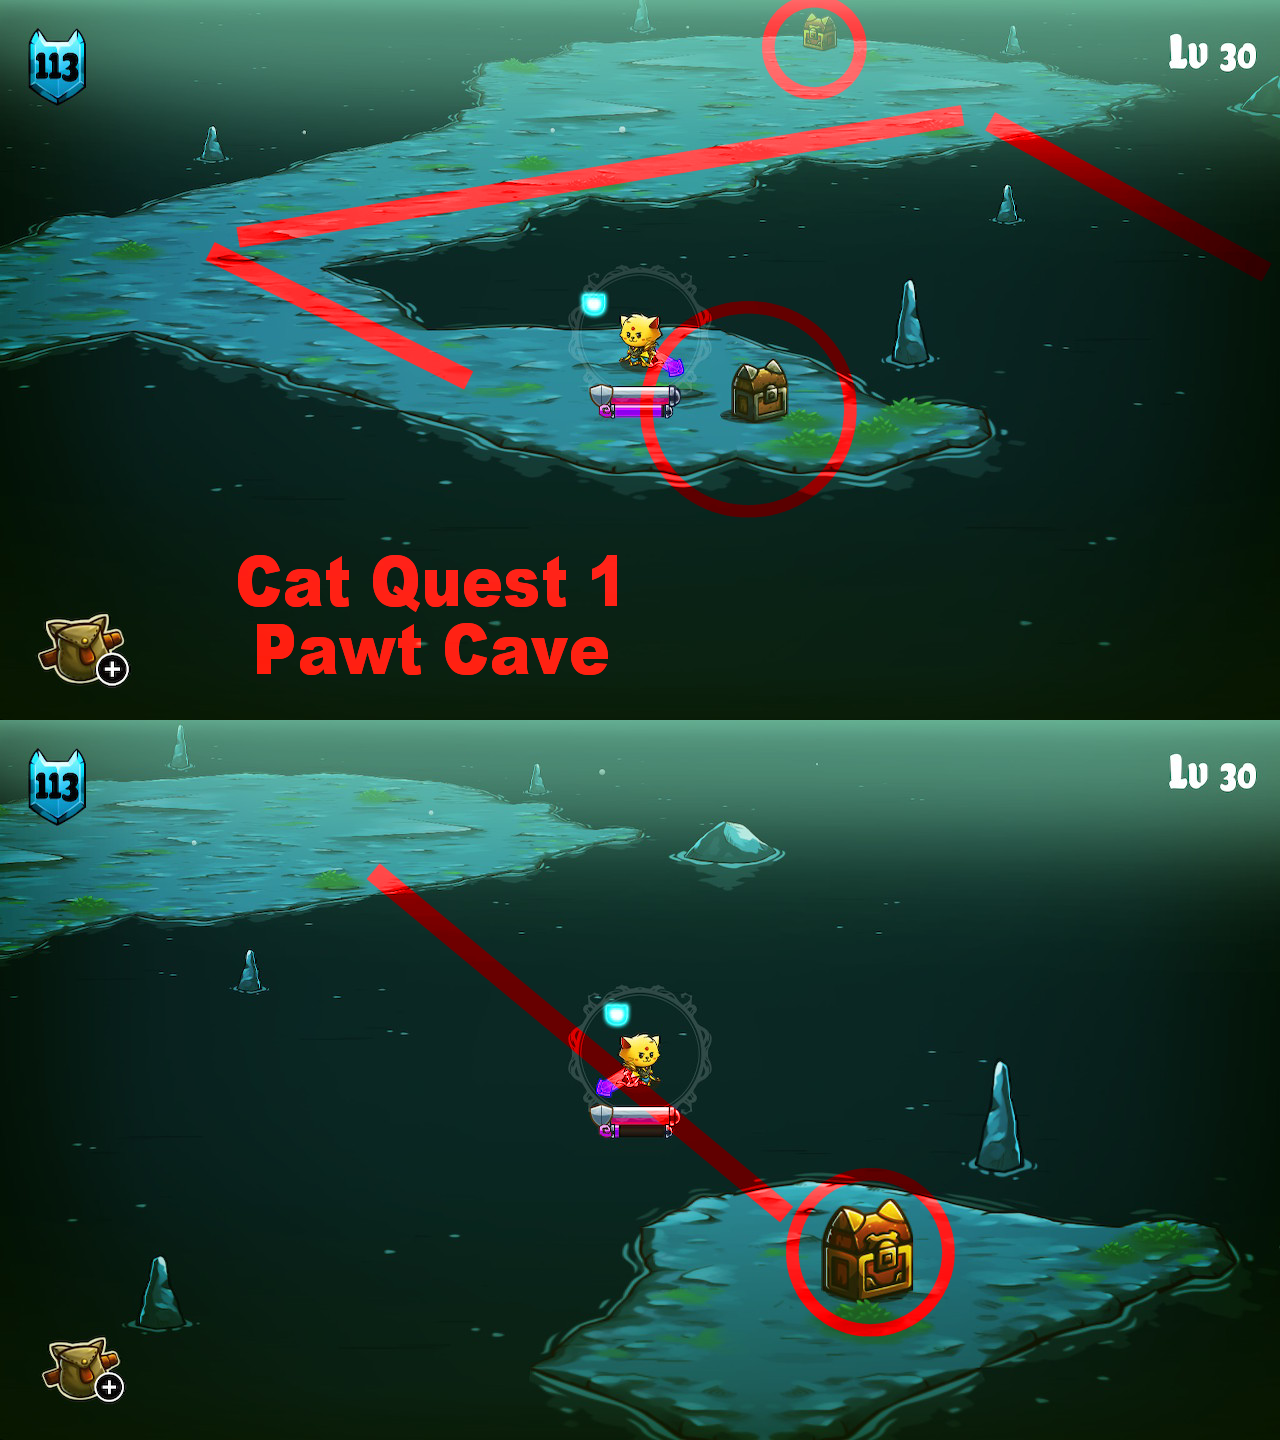 pawt cave cat quest 2